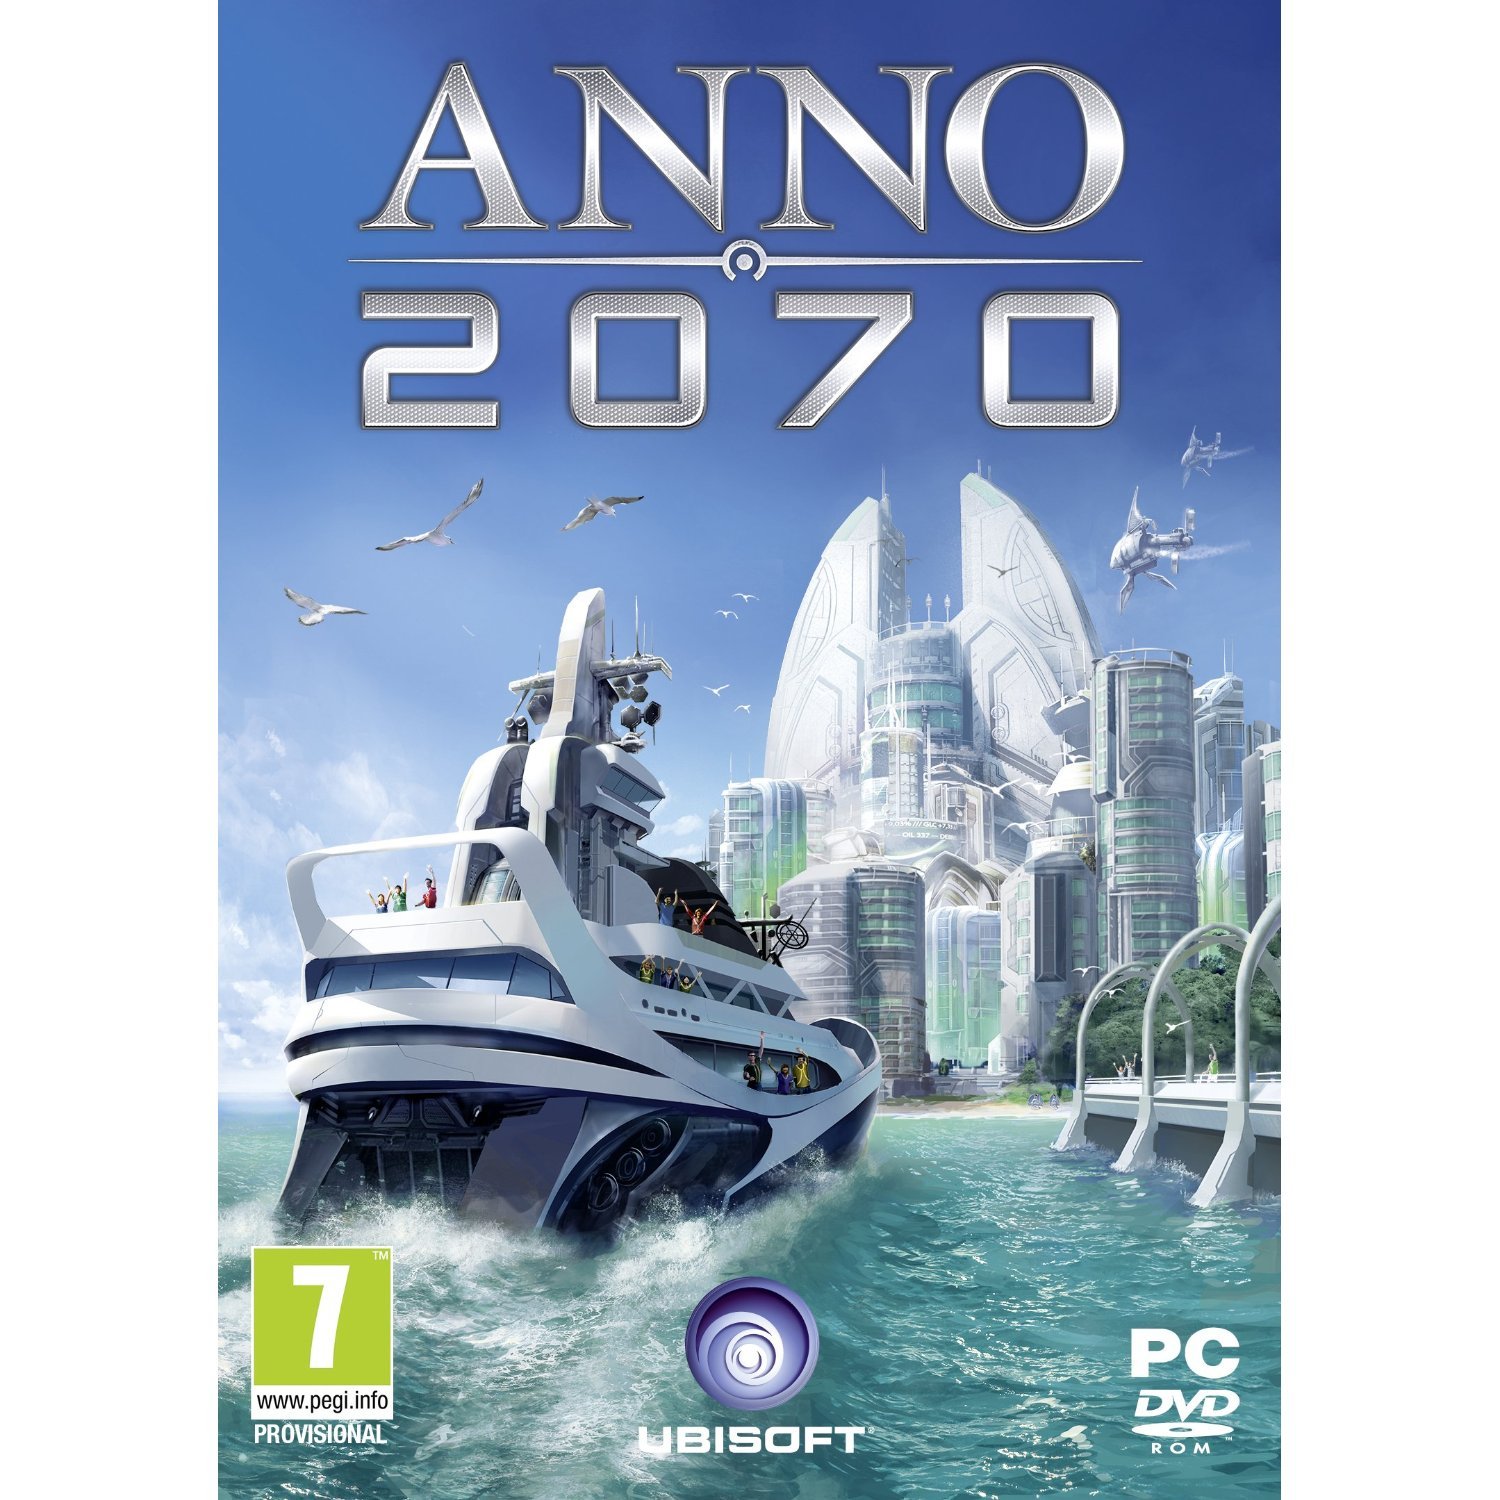 Anno 2070 для steam фото 103